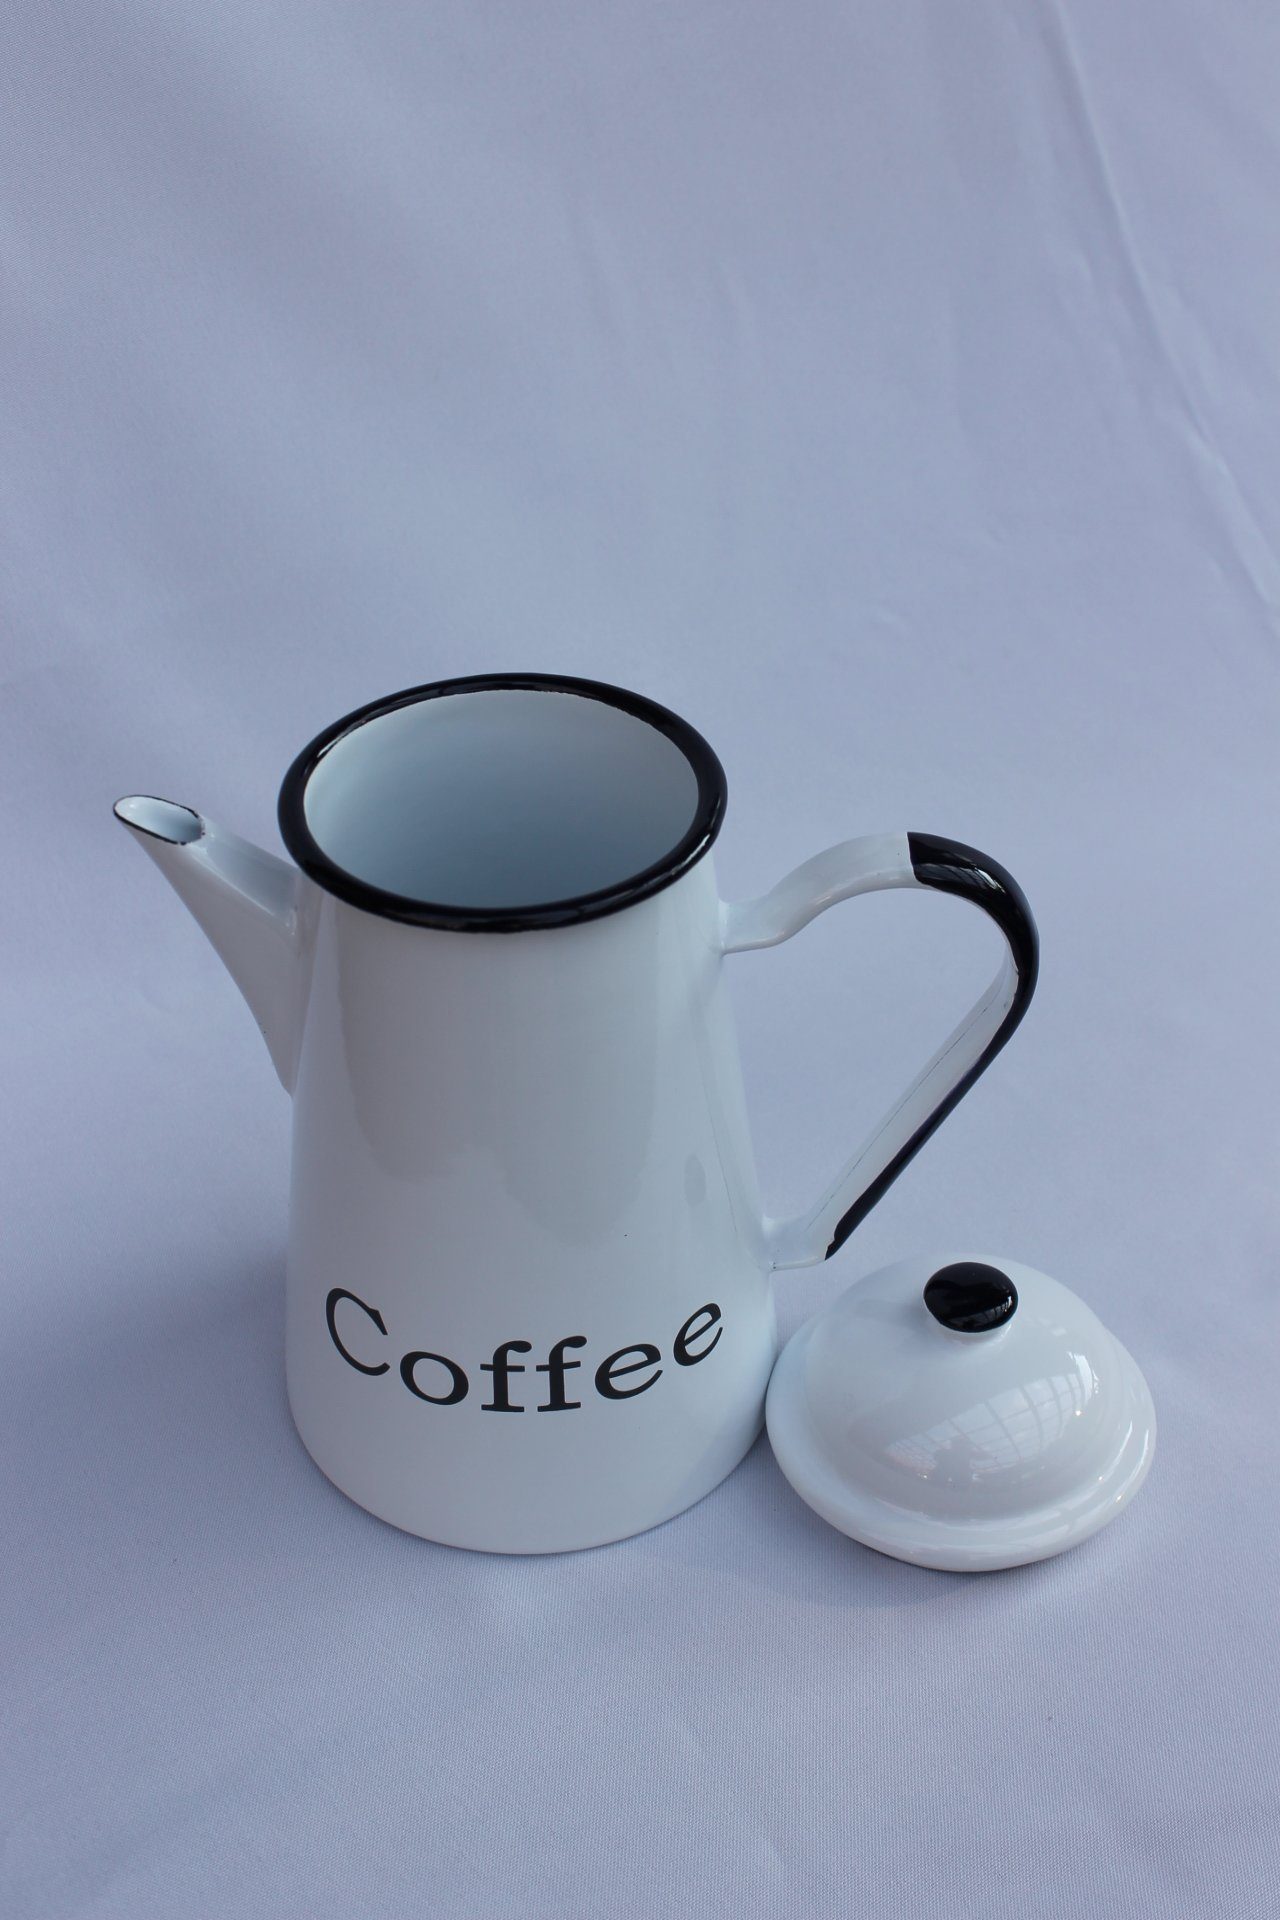 emailliert 578TB Emaille 1,0 Teekanne Nostalgie L cm Kaffeekanne Wasserkanne Coffee 22 DanDiBo Kanne Kaffeekanne